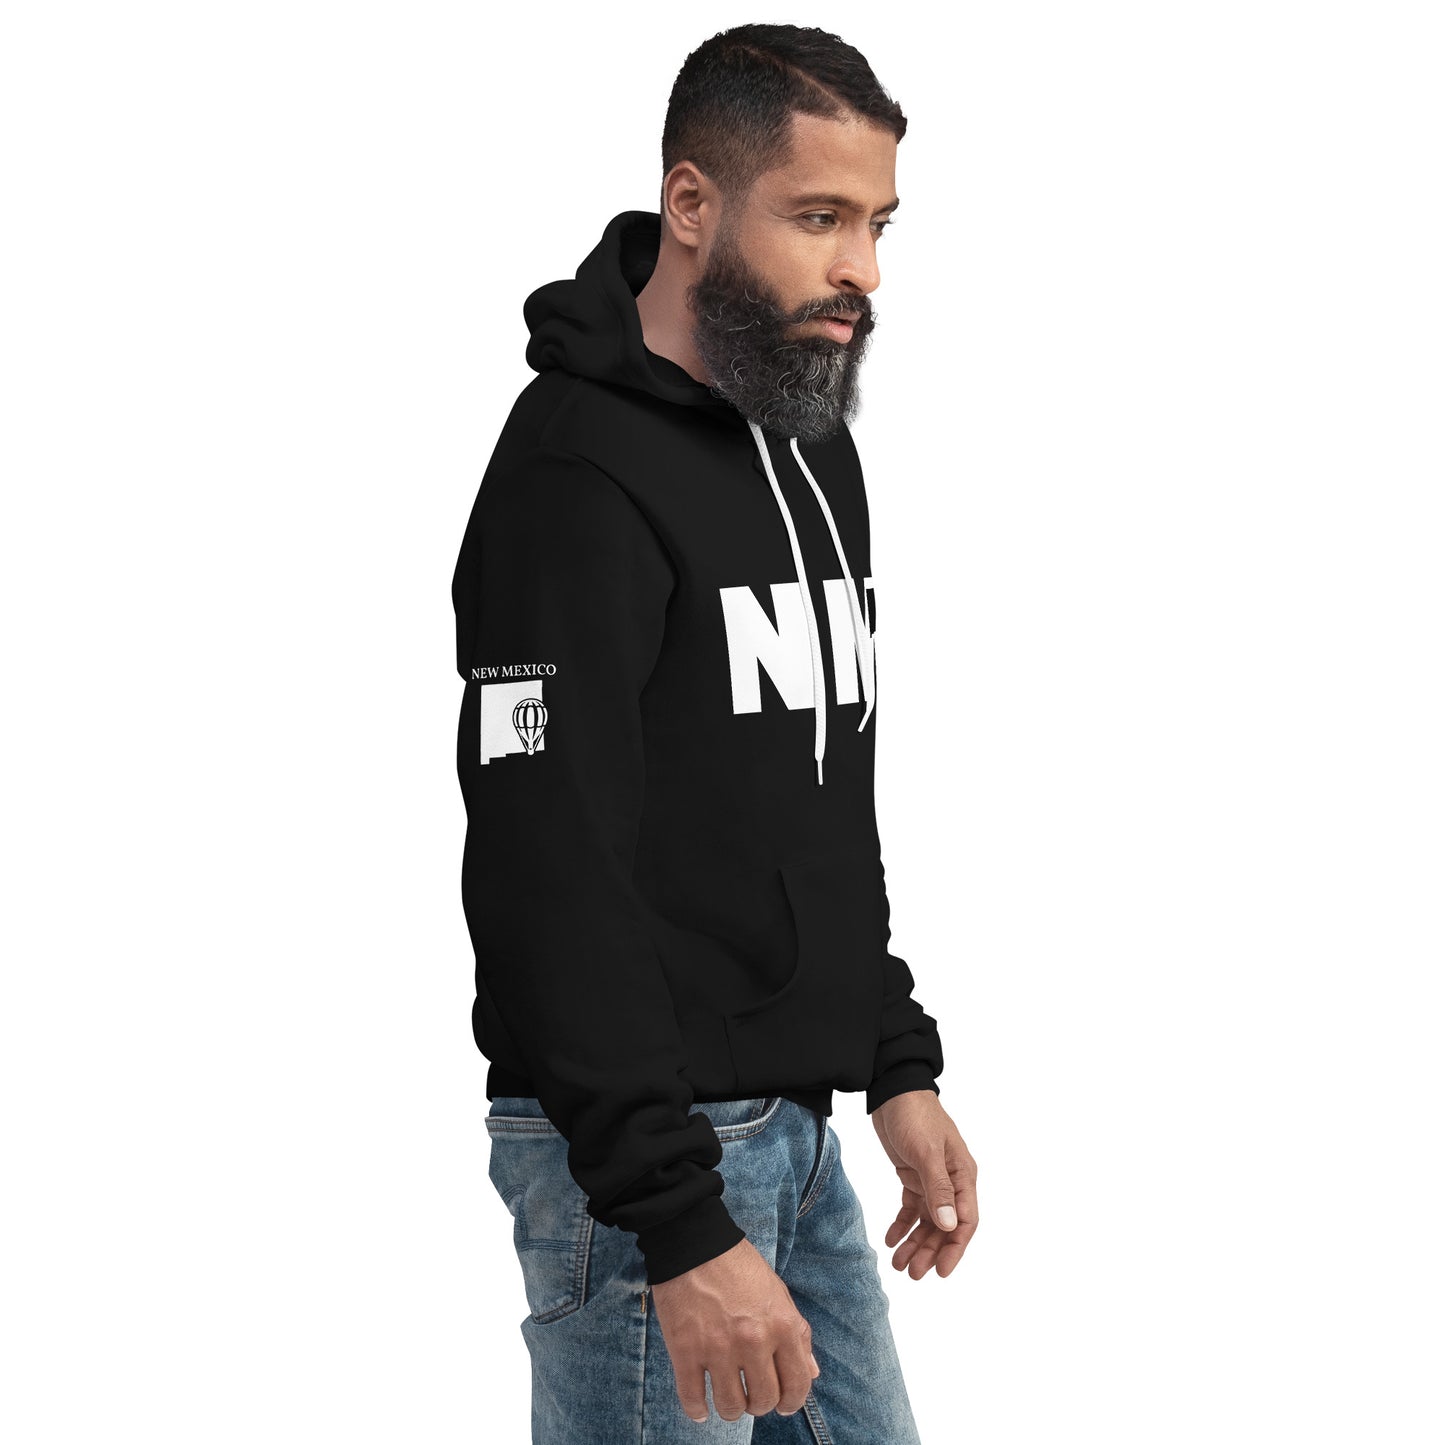 Unisex hoodie - NM (New Mexico)